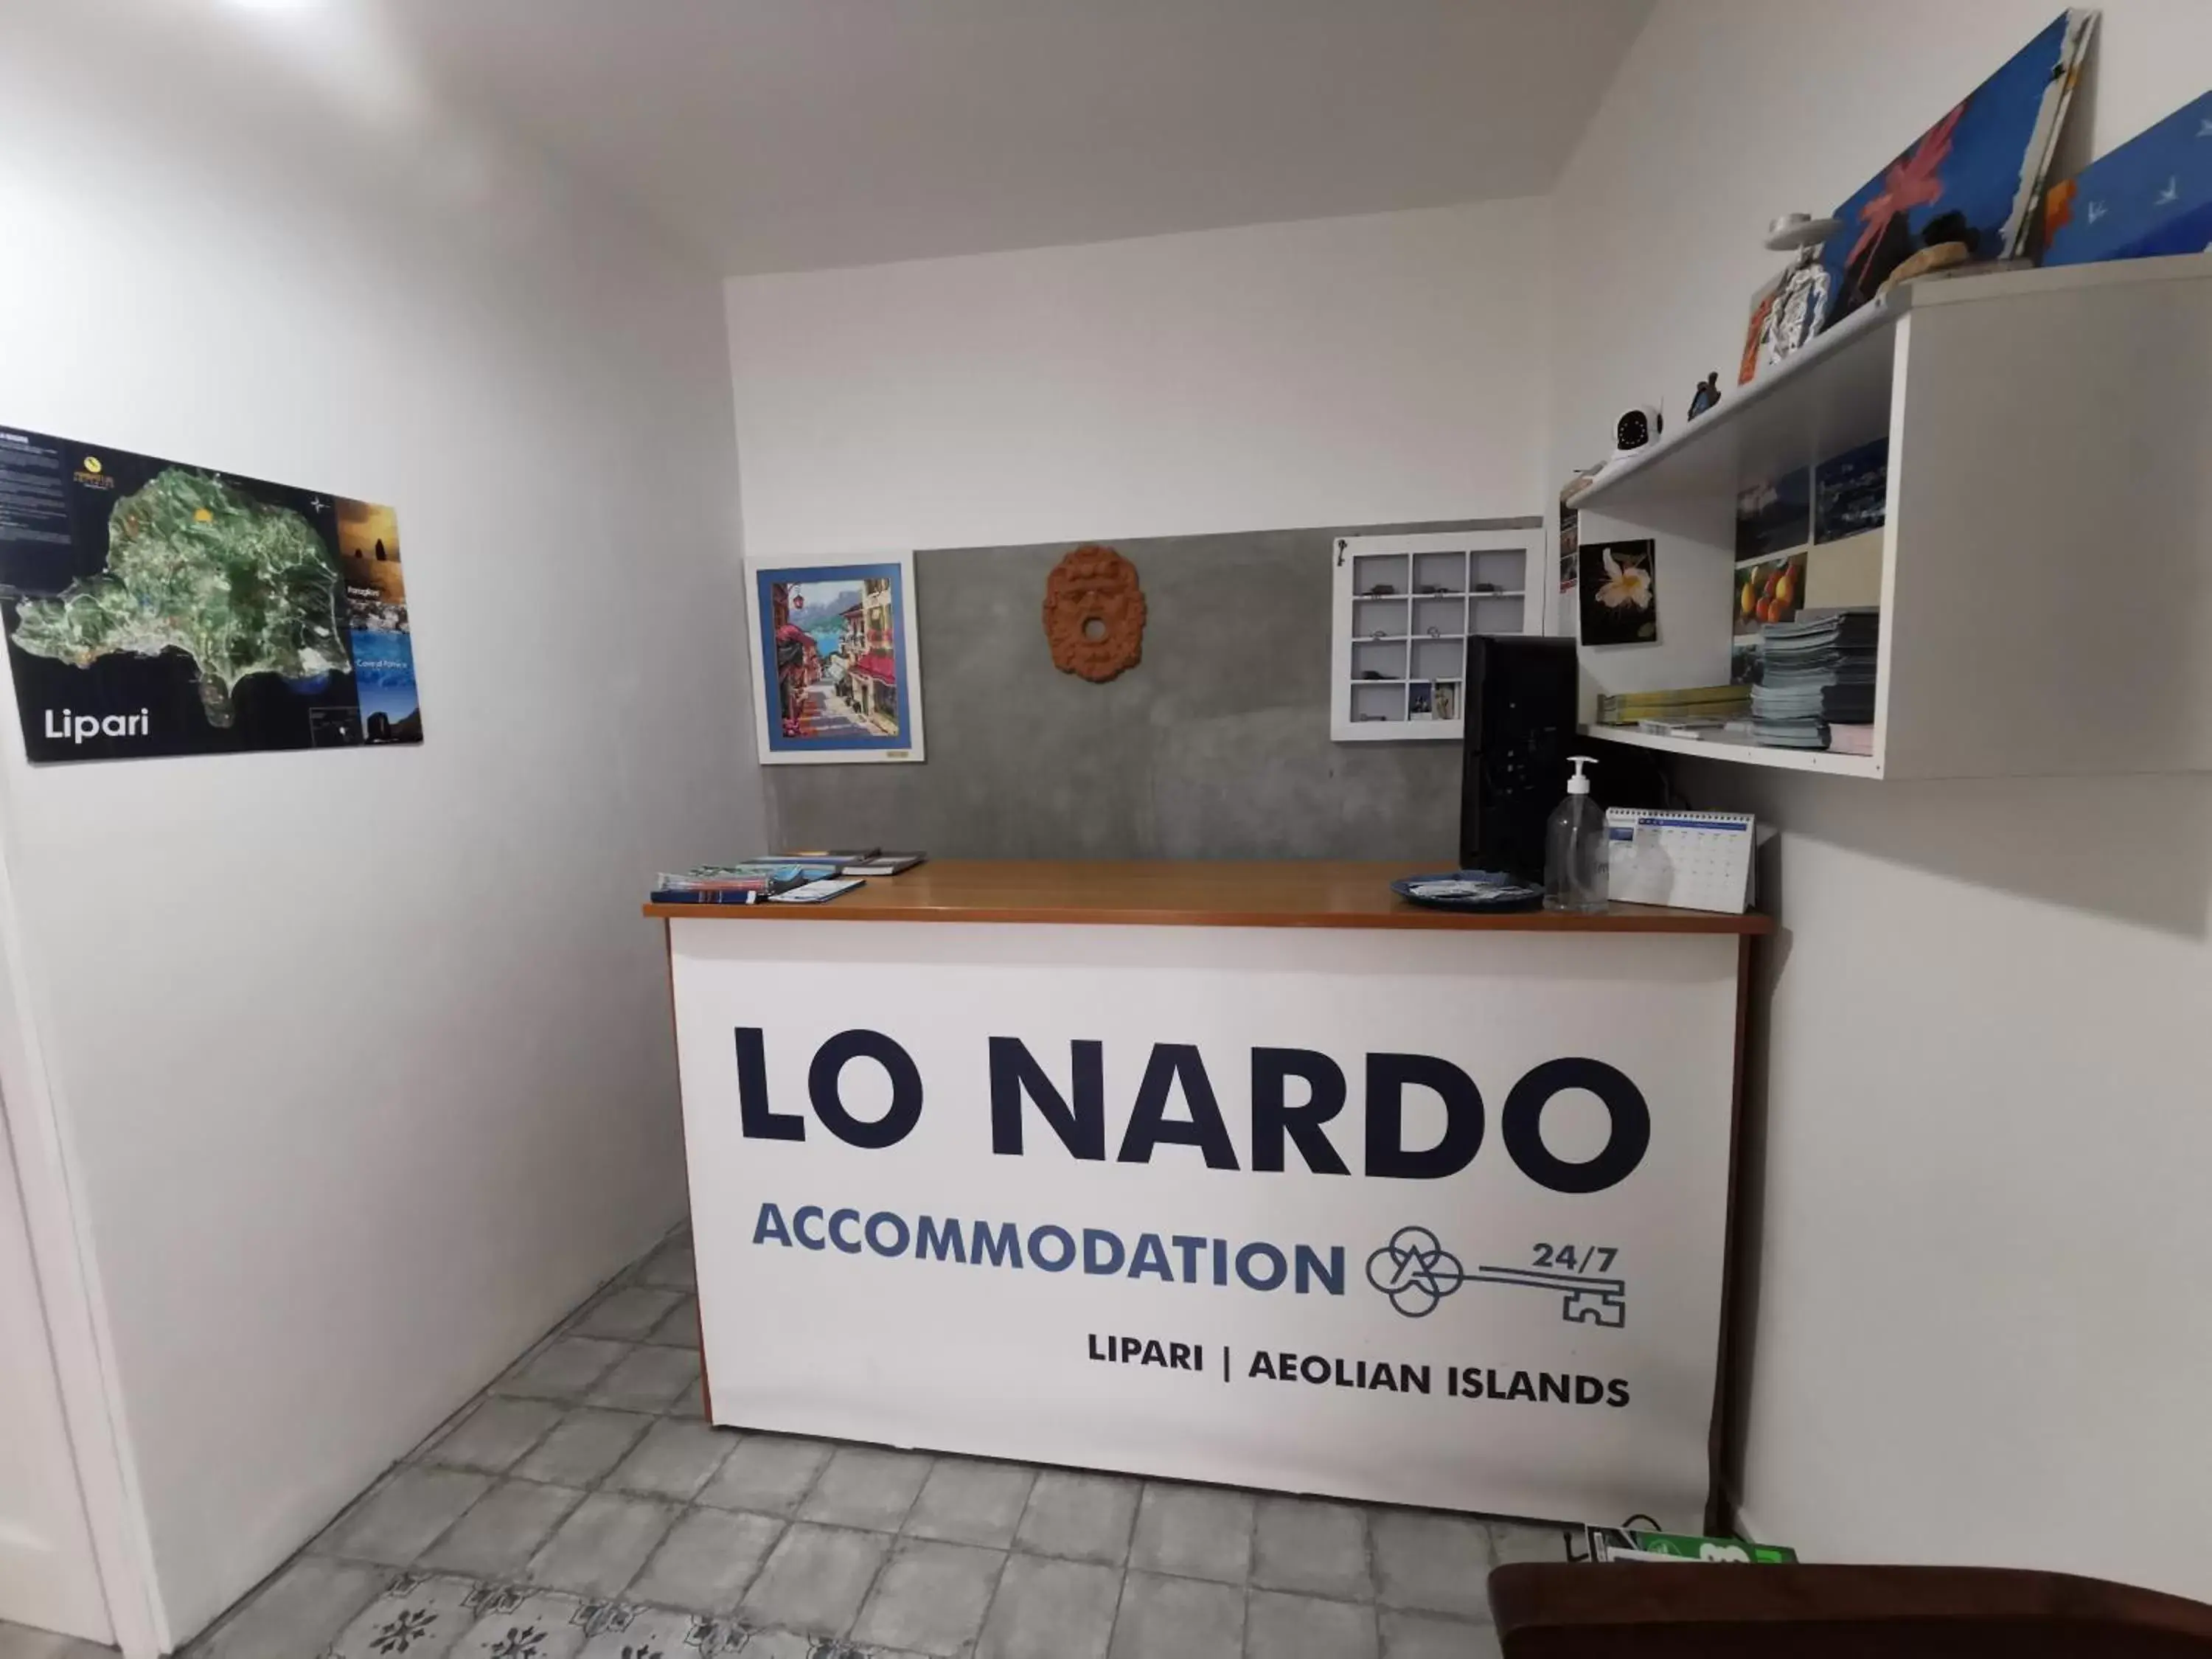 Lobby or reception, Lobby/Reception in Lo Nardo Accommodation